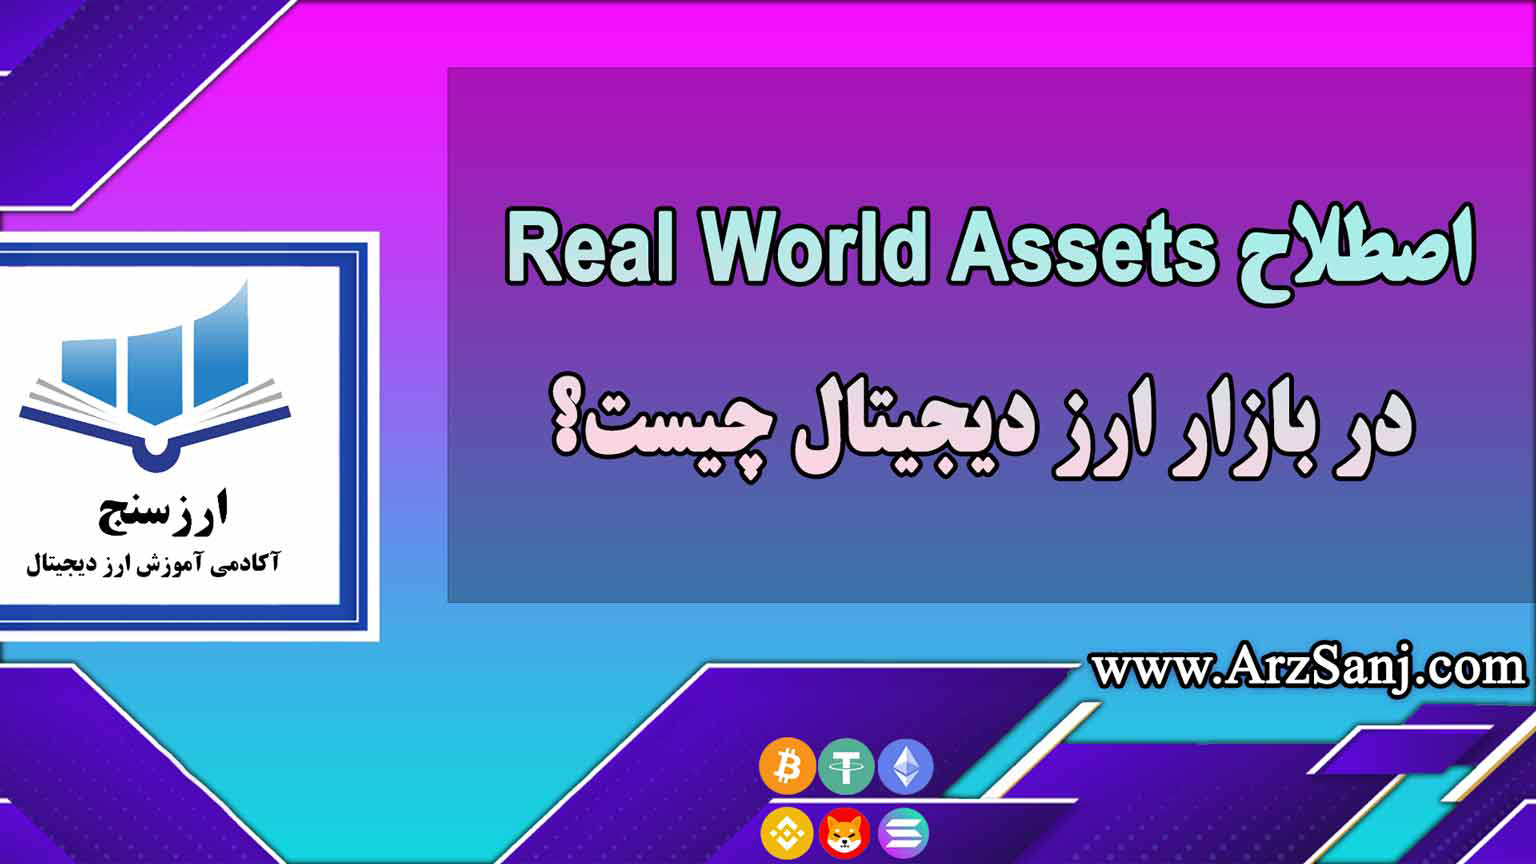 اصطلاح Real World Assets در بازار ارز دیجیتال چیست؟